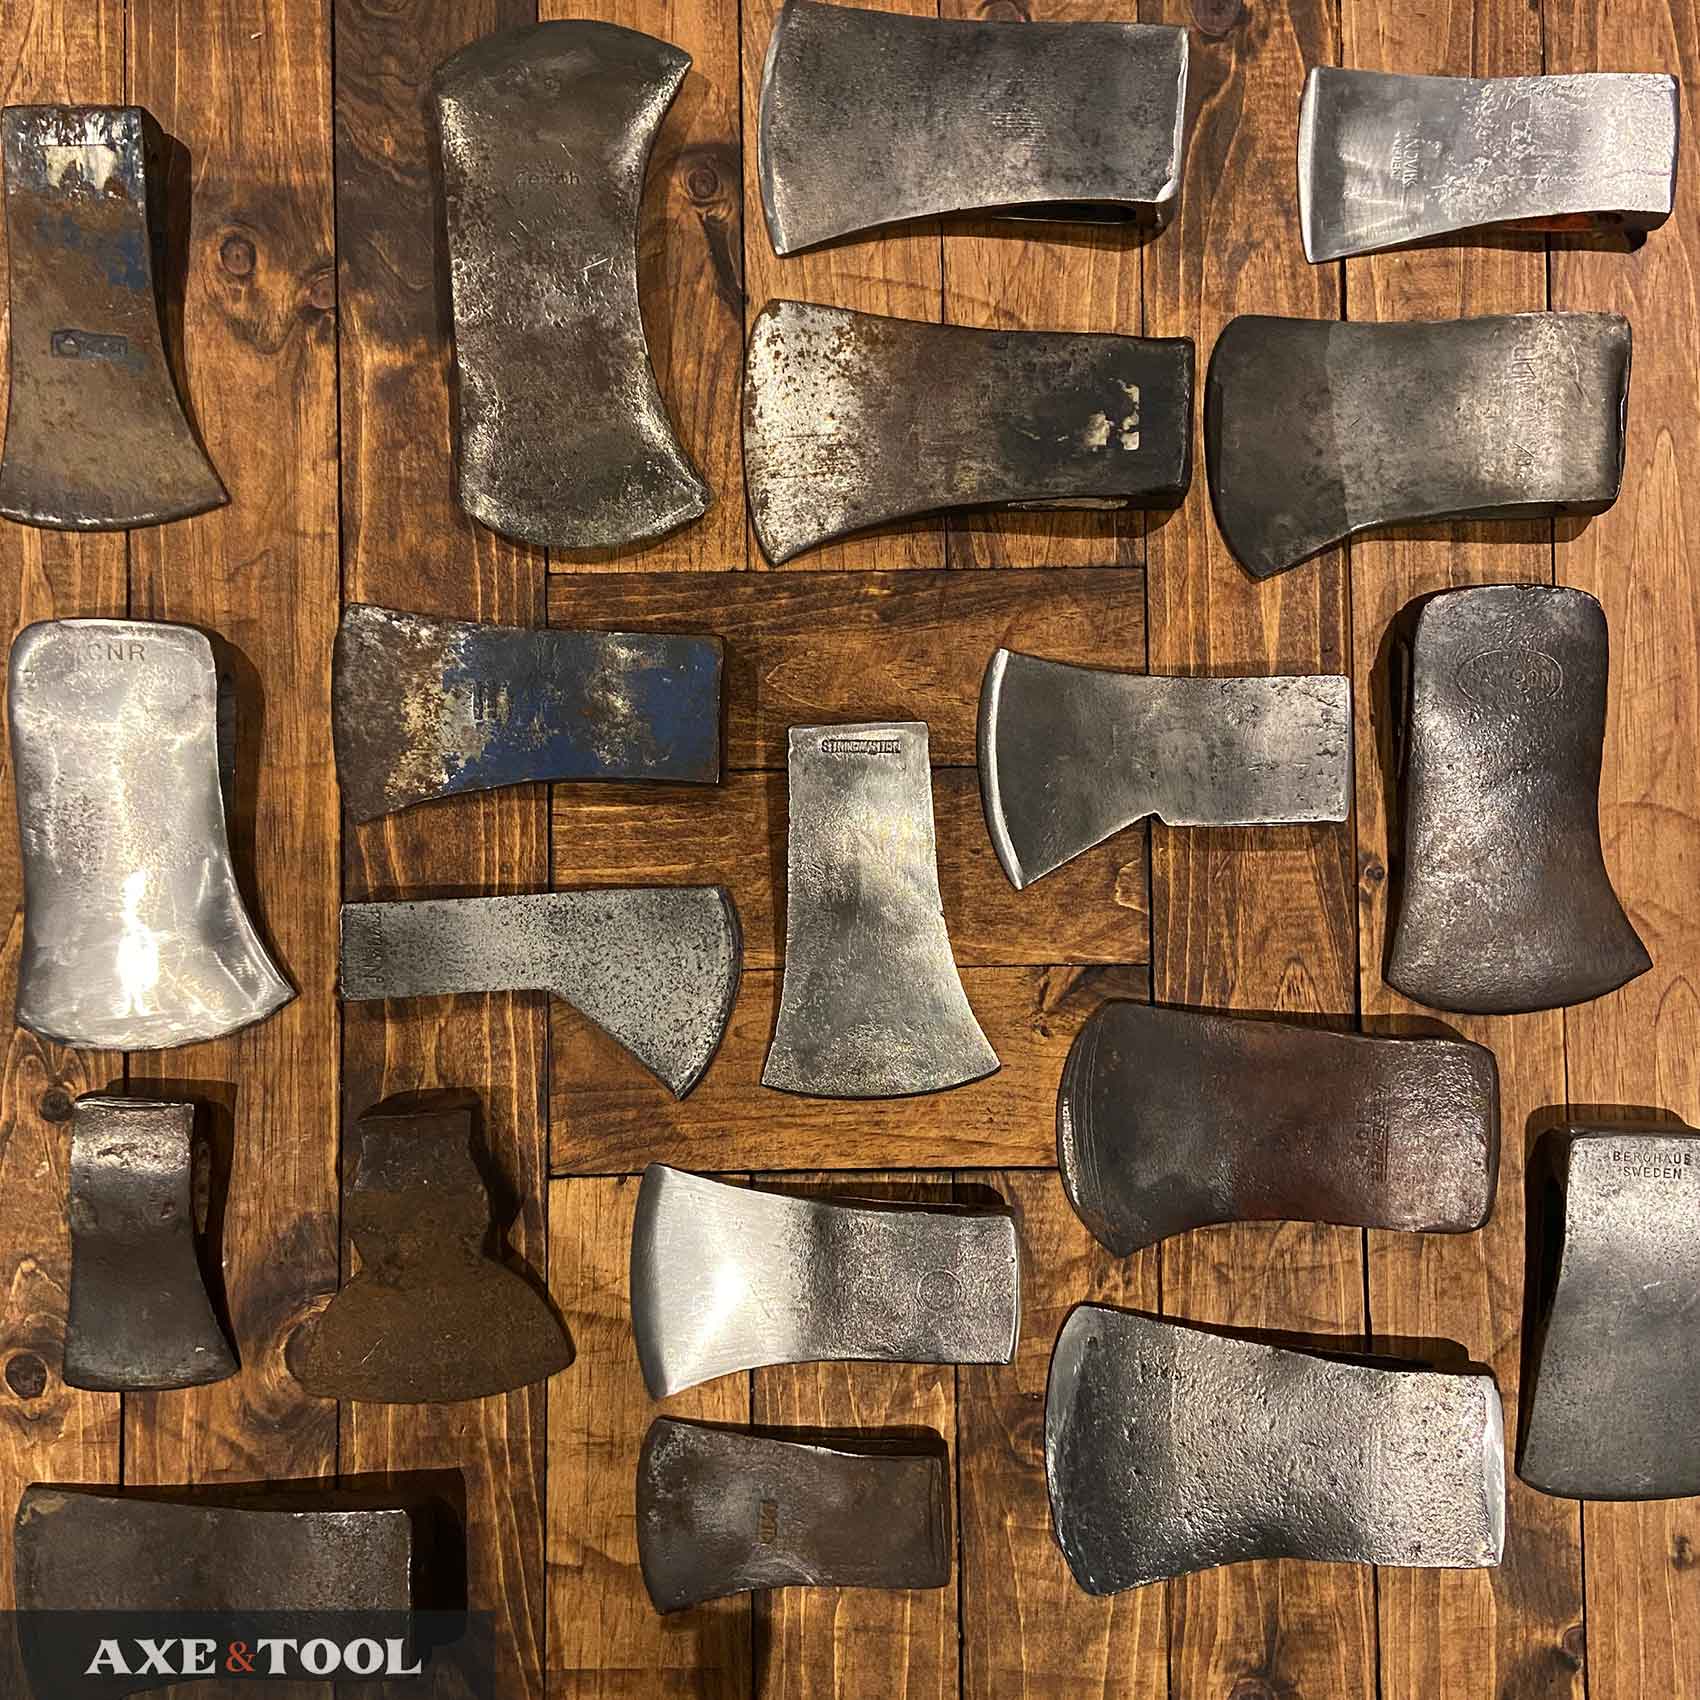 Vintage lot of 4 single bit axe heads. 